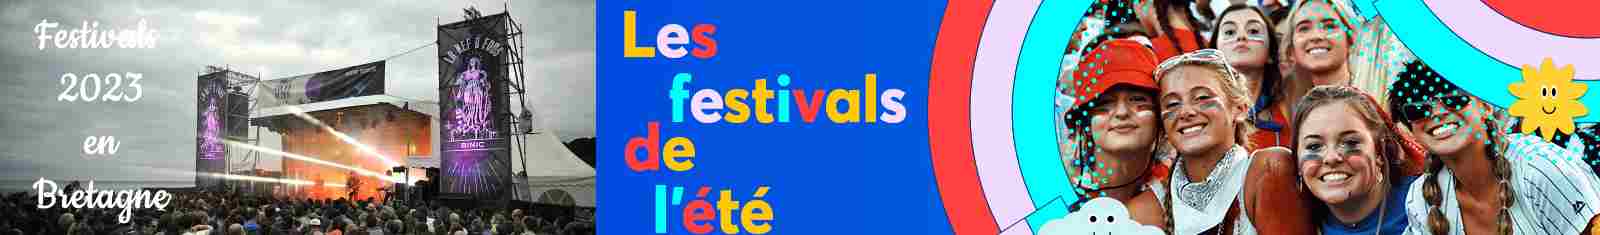 Festival de musique en bretagne 2023 en bretagne